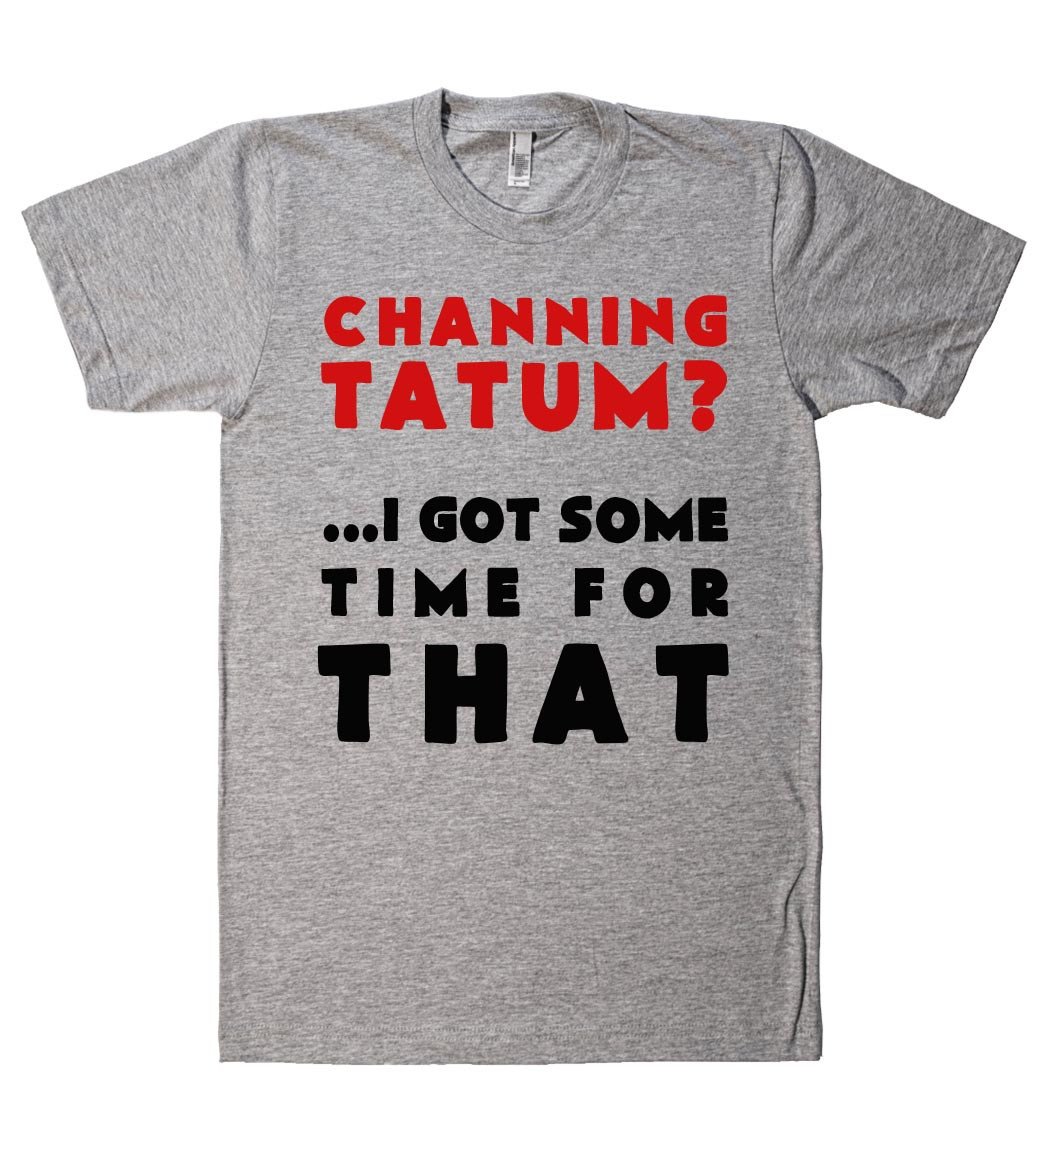 channing tatum? i got some time for that tshirt - Shirtoopia